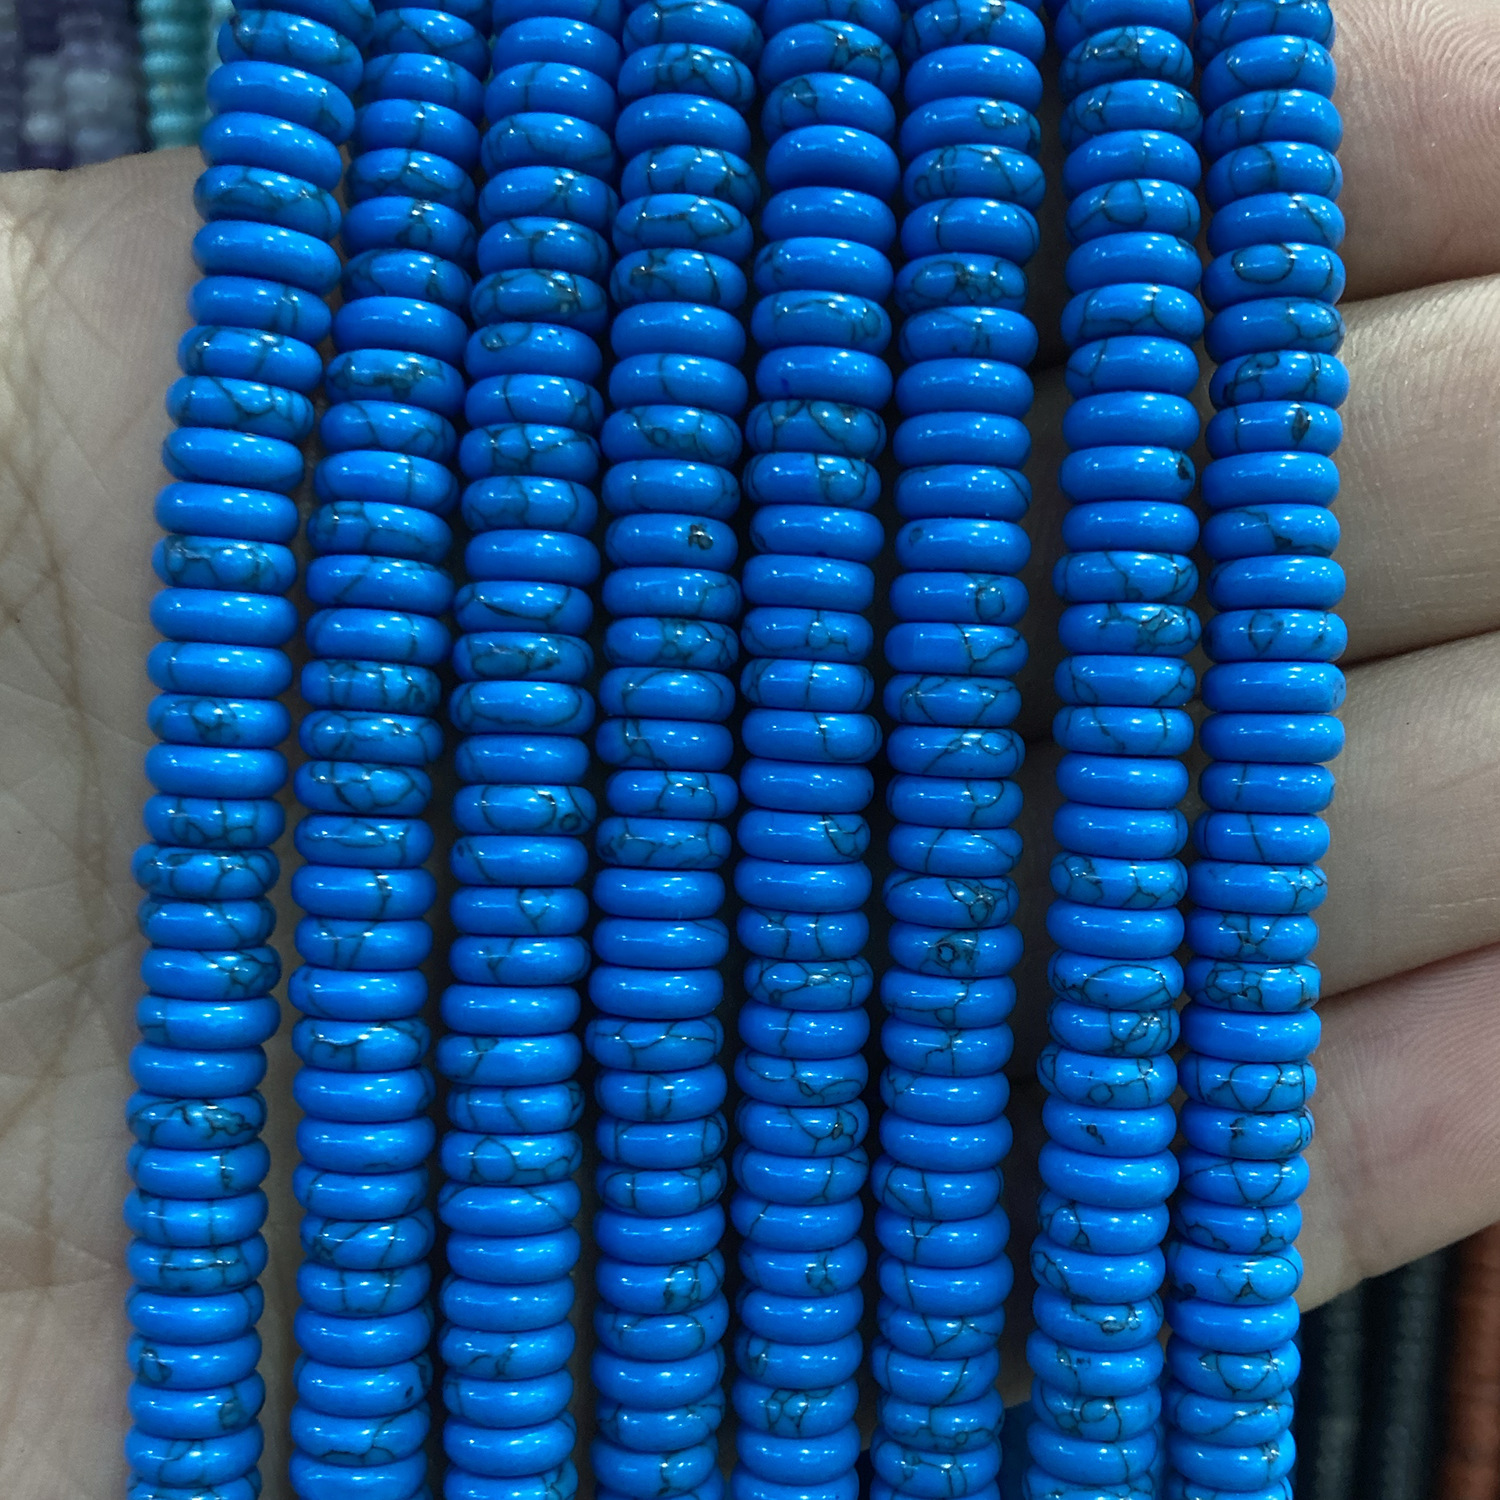 32:Dark blue thread pine